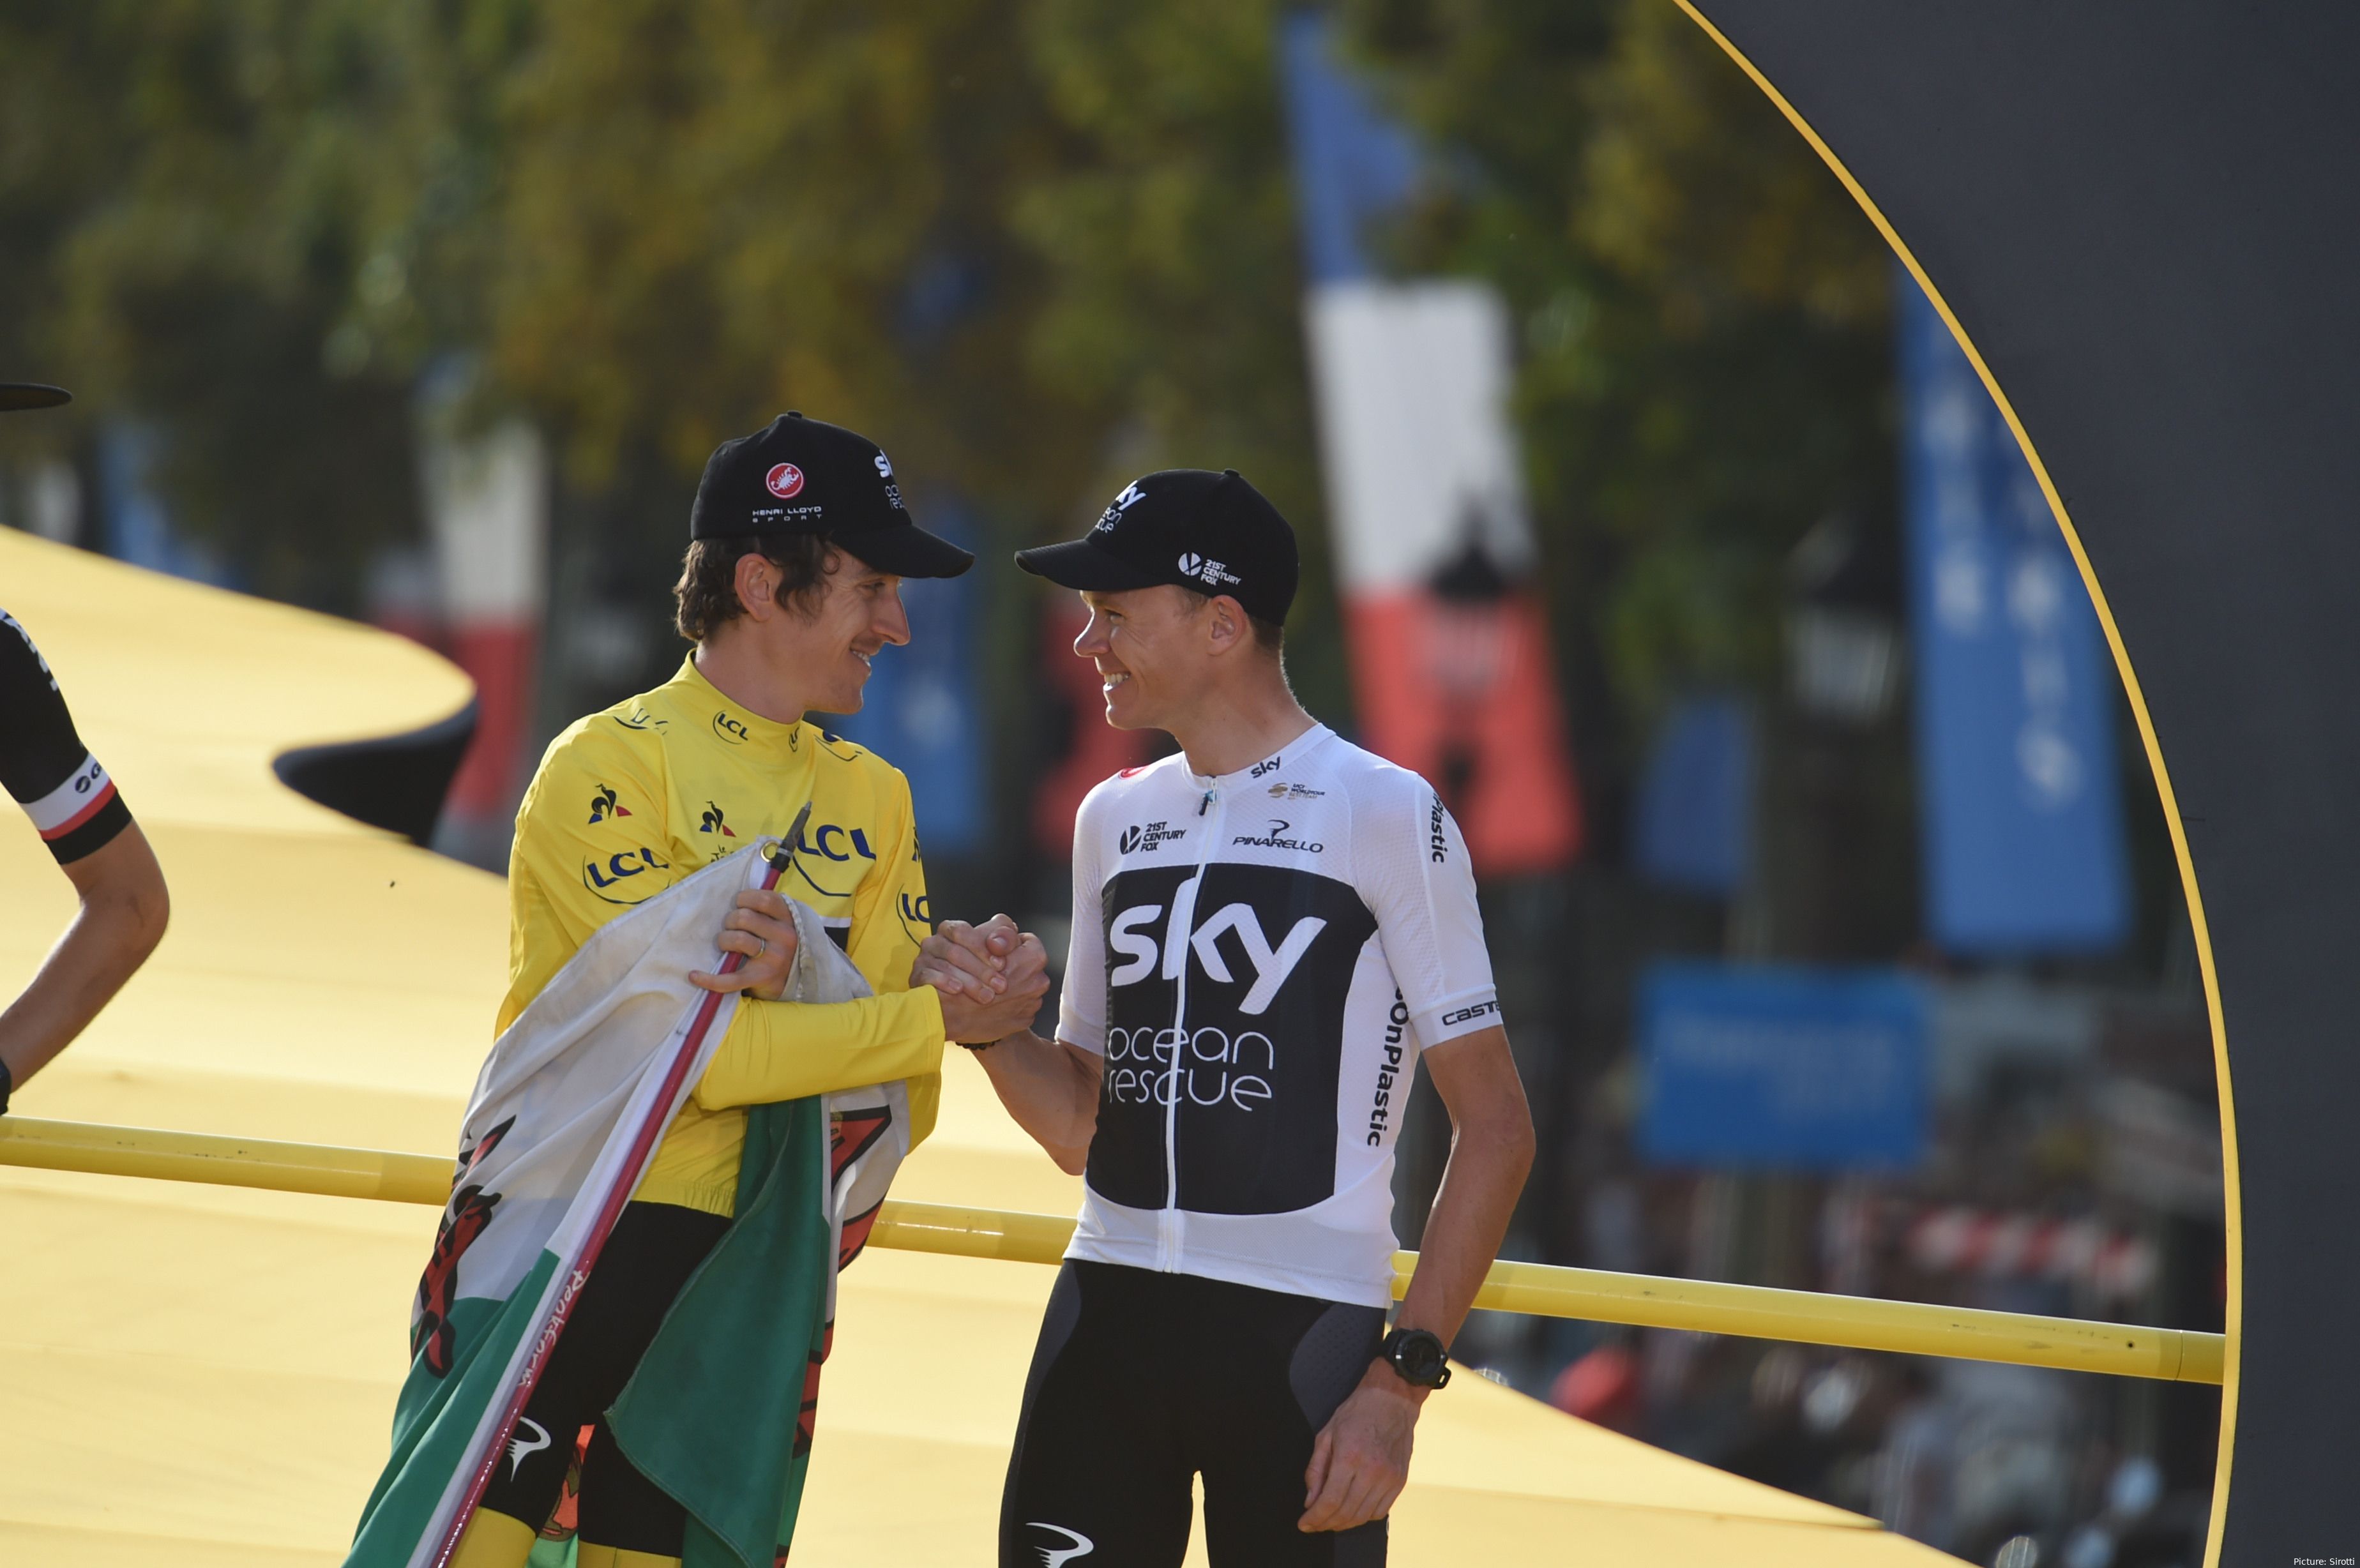 Thomas (L) en Froome (R) gaven Team Sky twee renners op het podium in de Tour de France van 2018